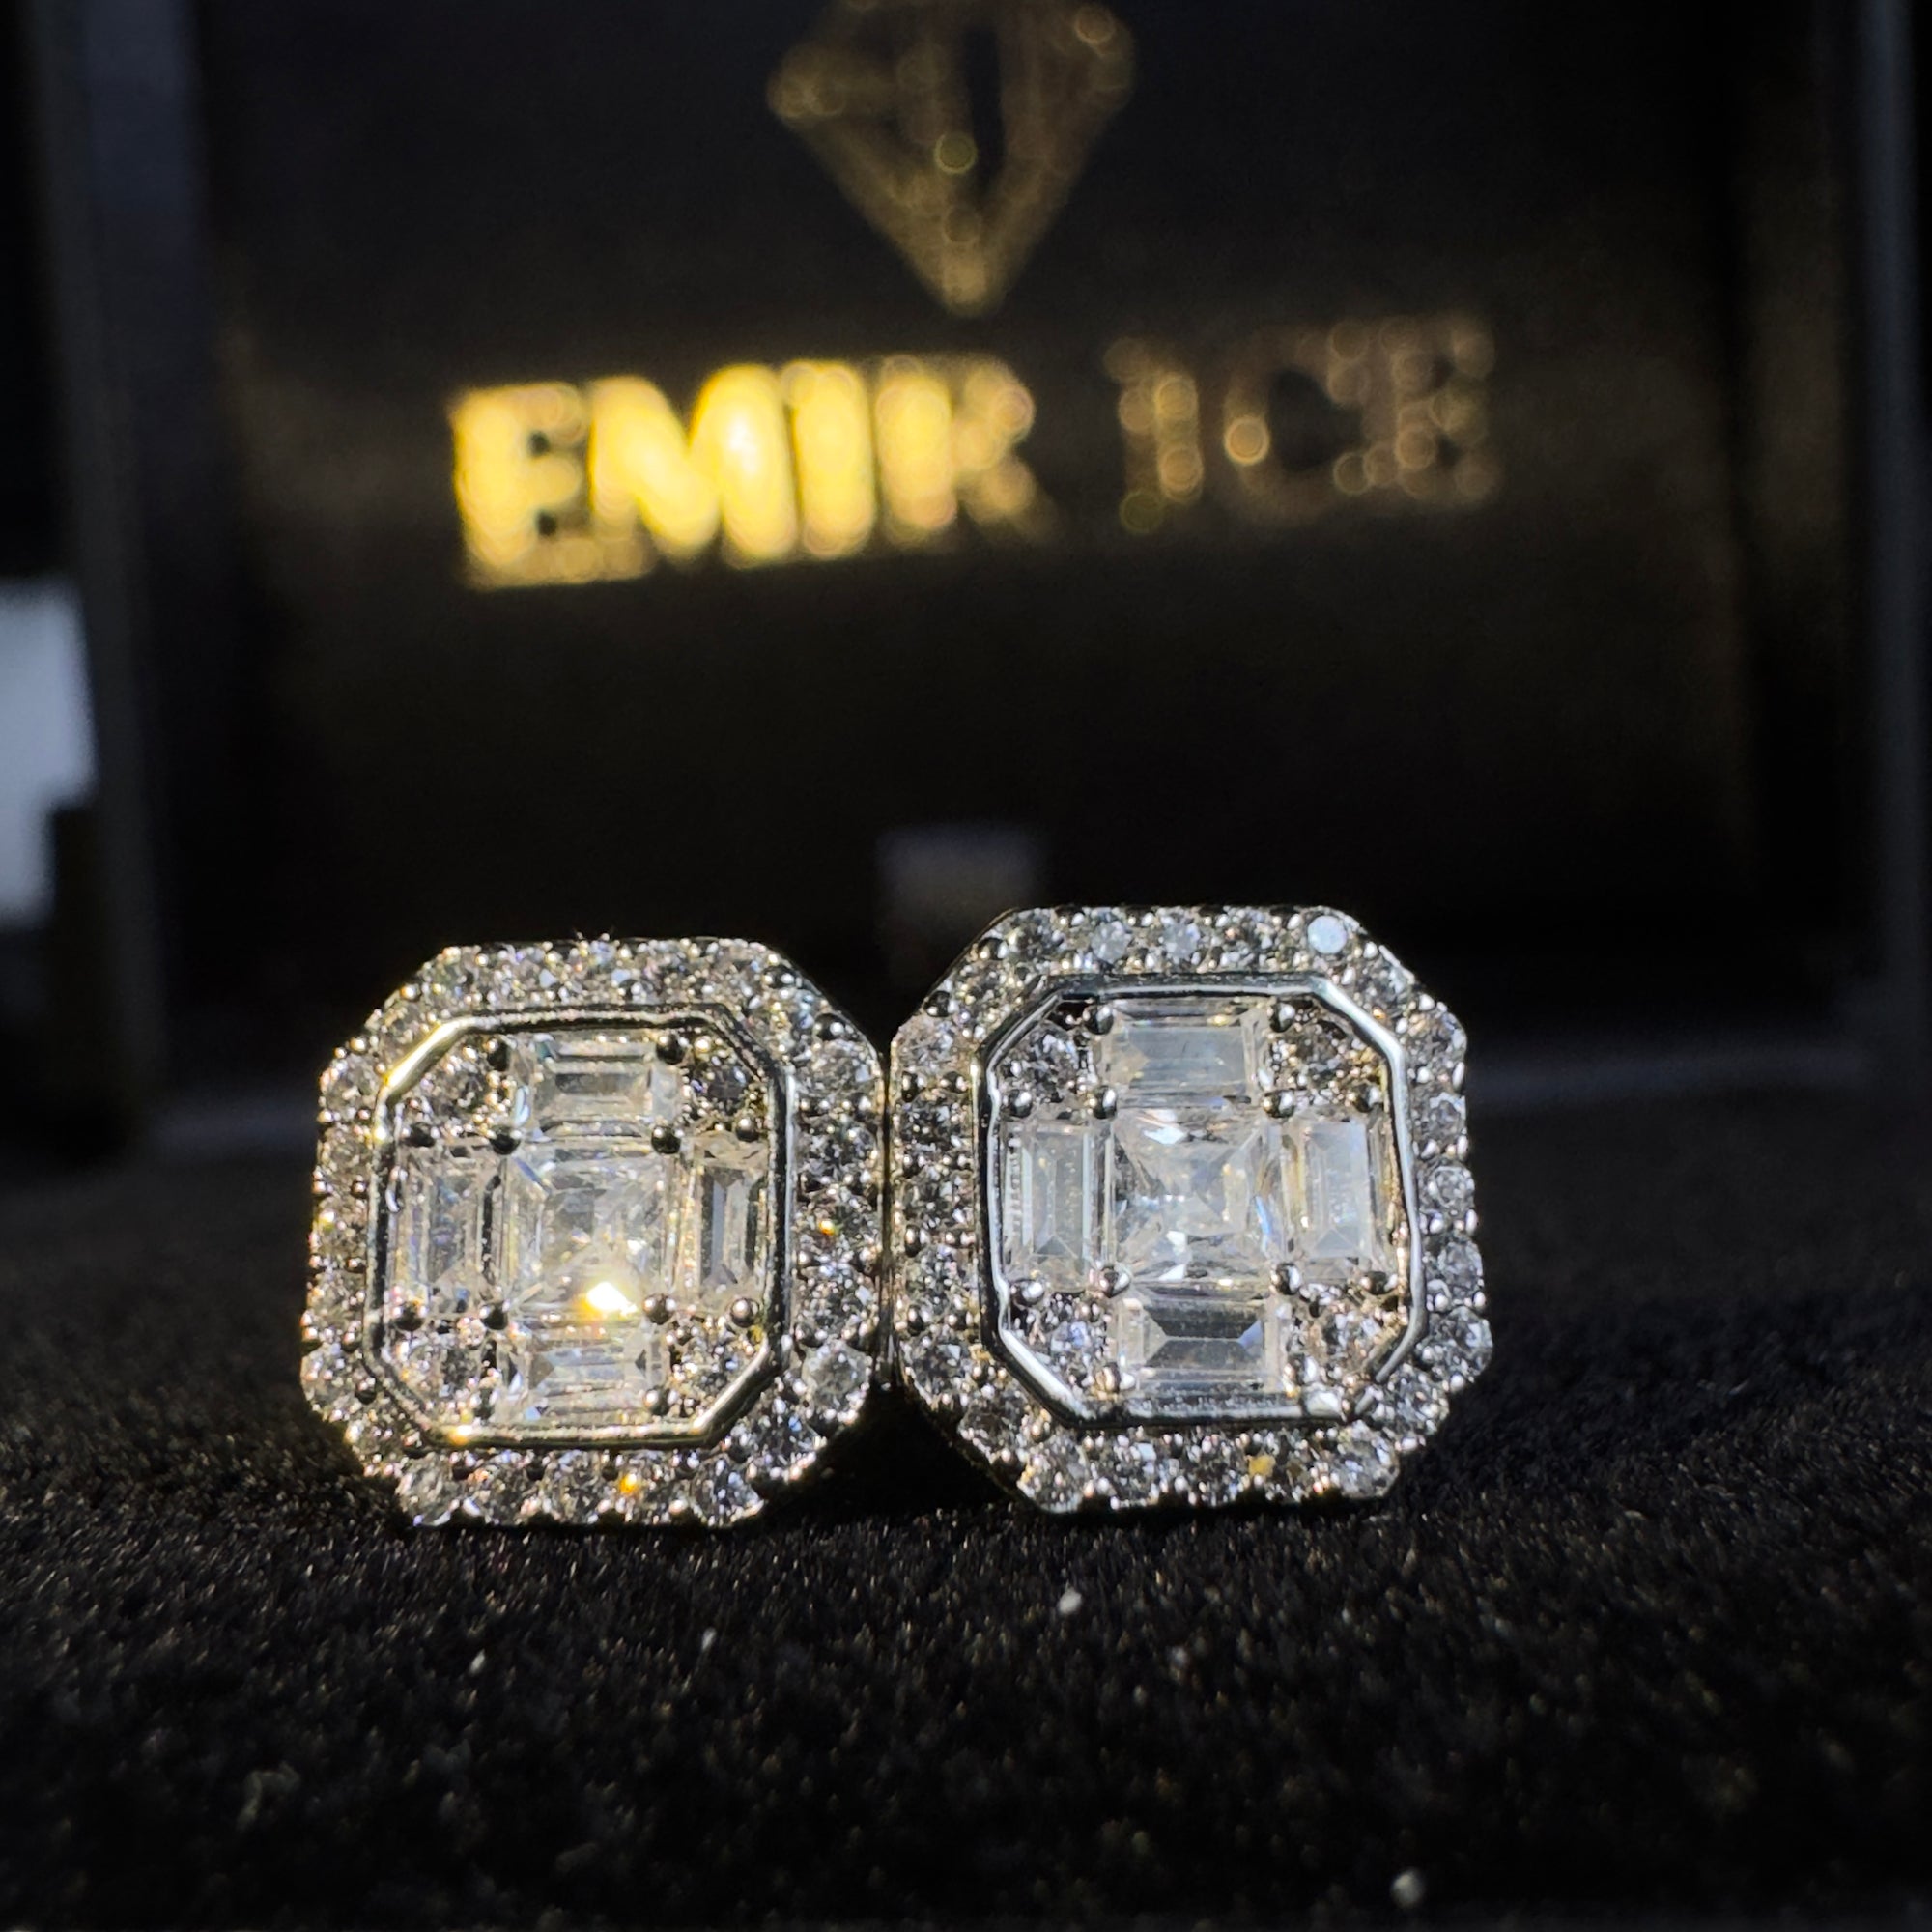 Bijoux hip hop en diamant plaqué or pour homme - Emir ICE